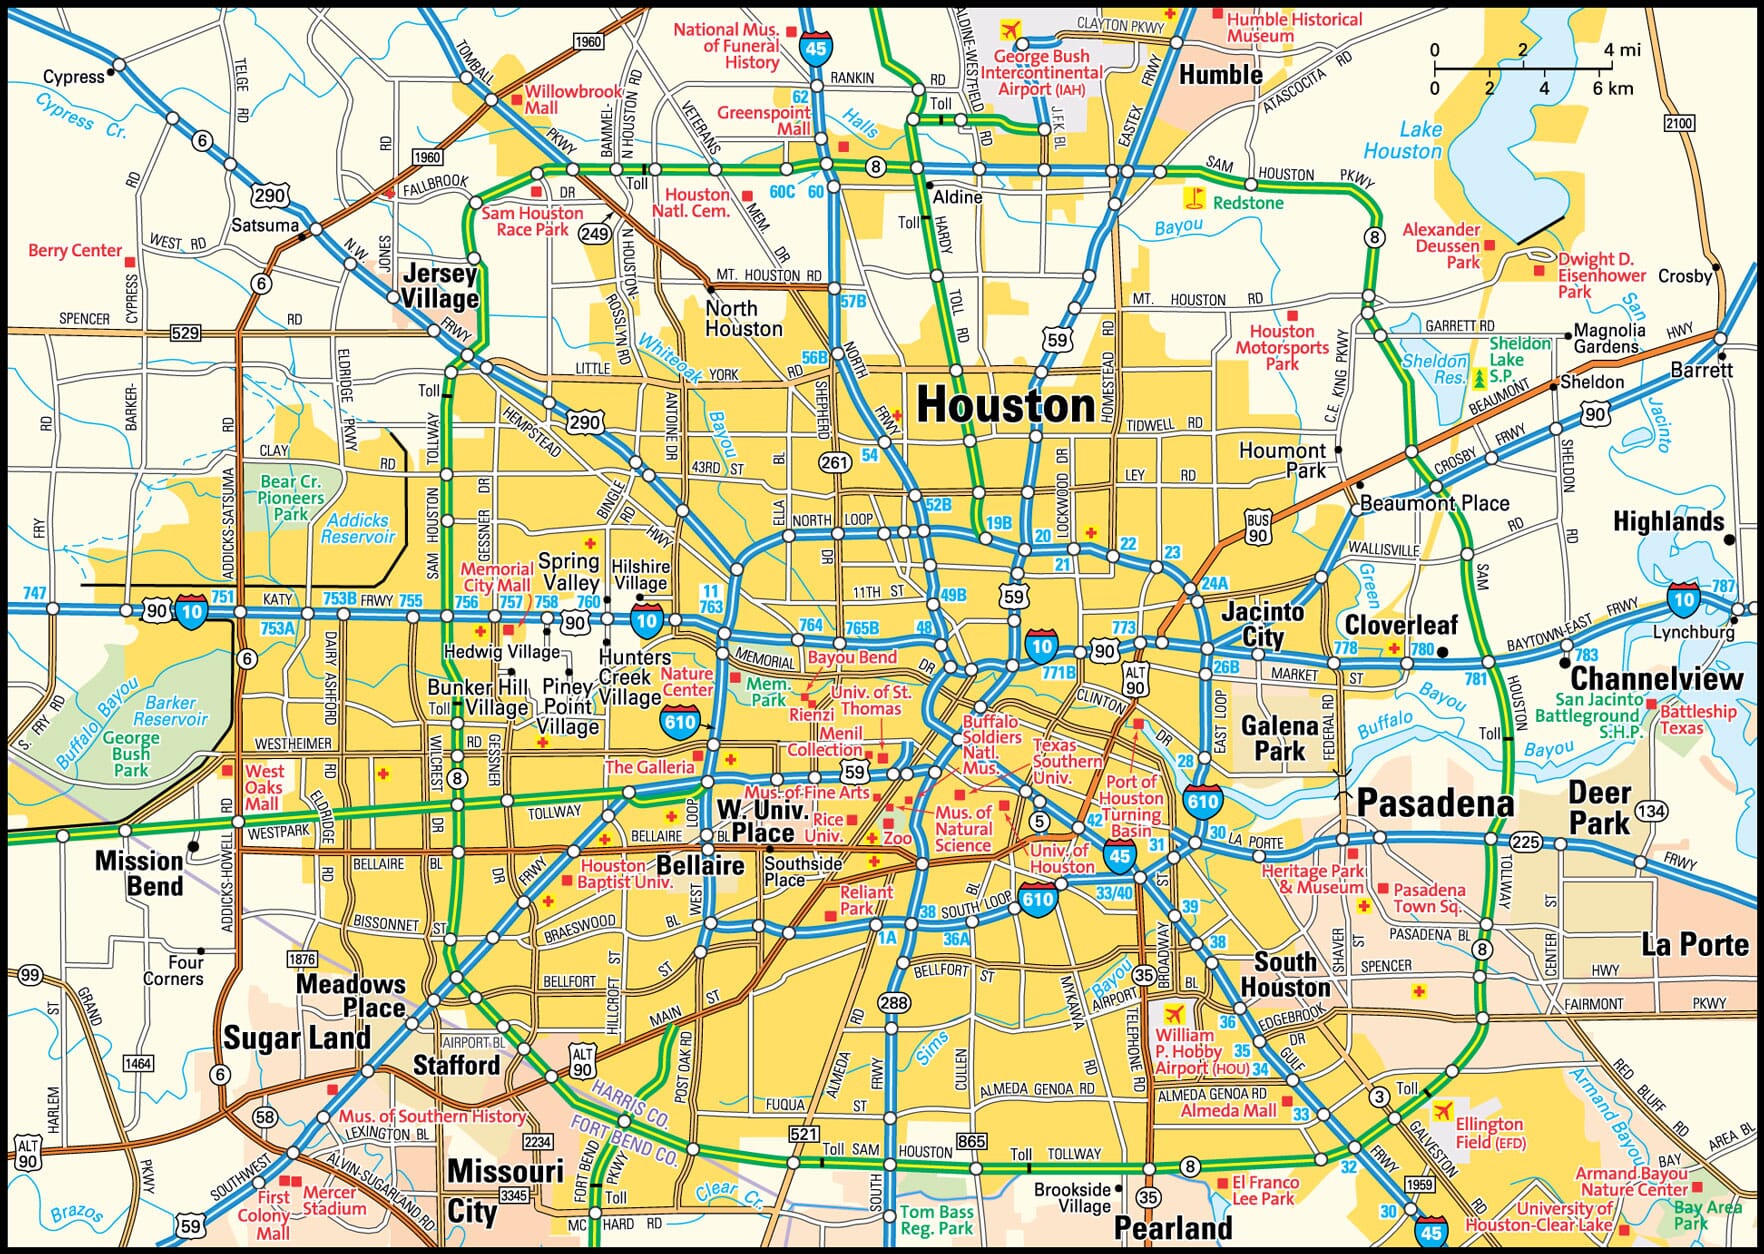 Houston City Council District Map